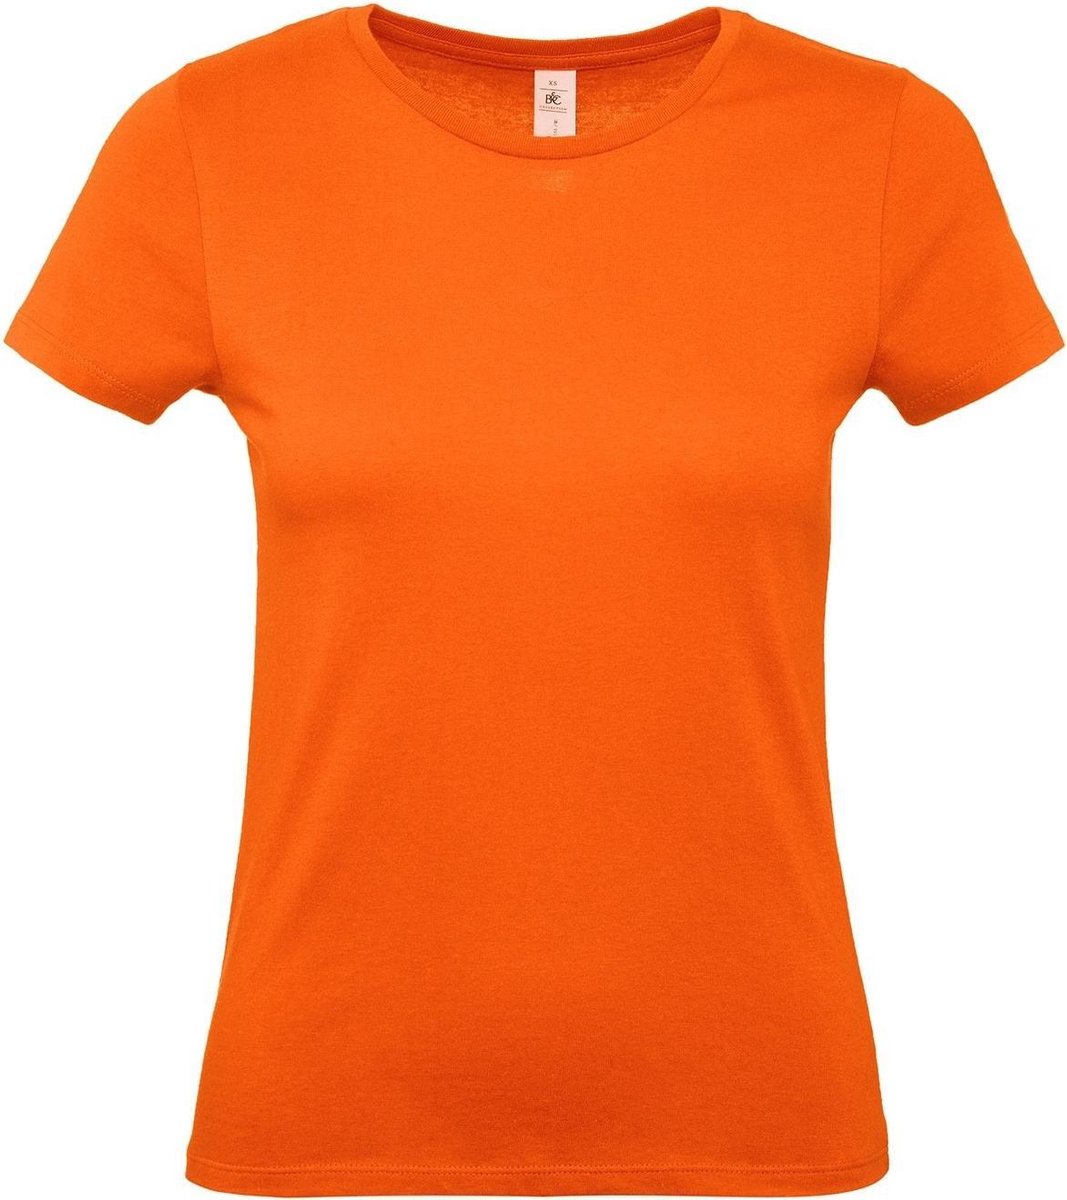 Set van 2x stuks oranje t-shirts met ronde hals voor dames - 100% katoen - Koningsdag / Nederland supporter, maat: S (36)